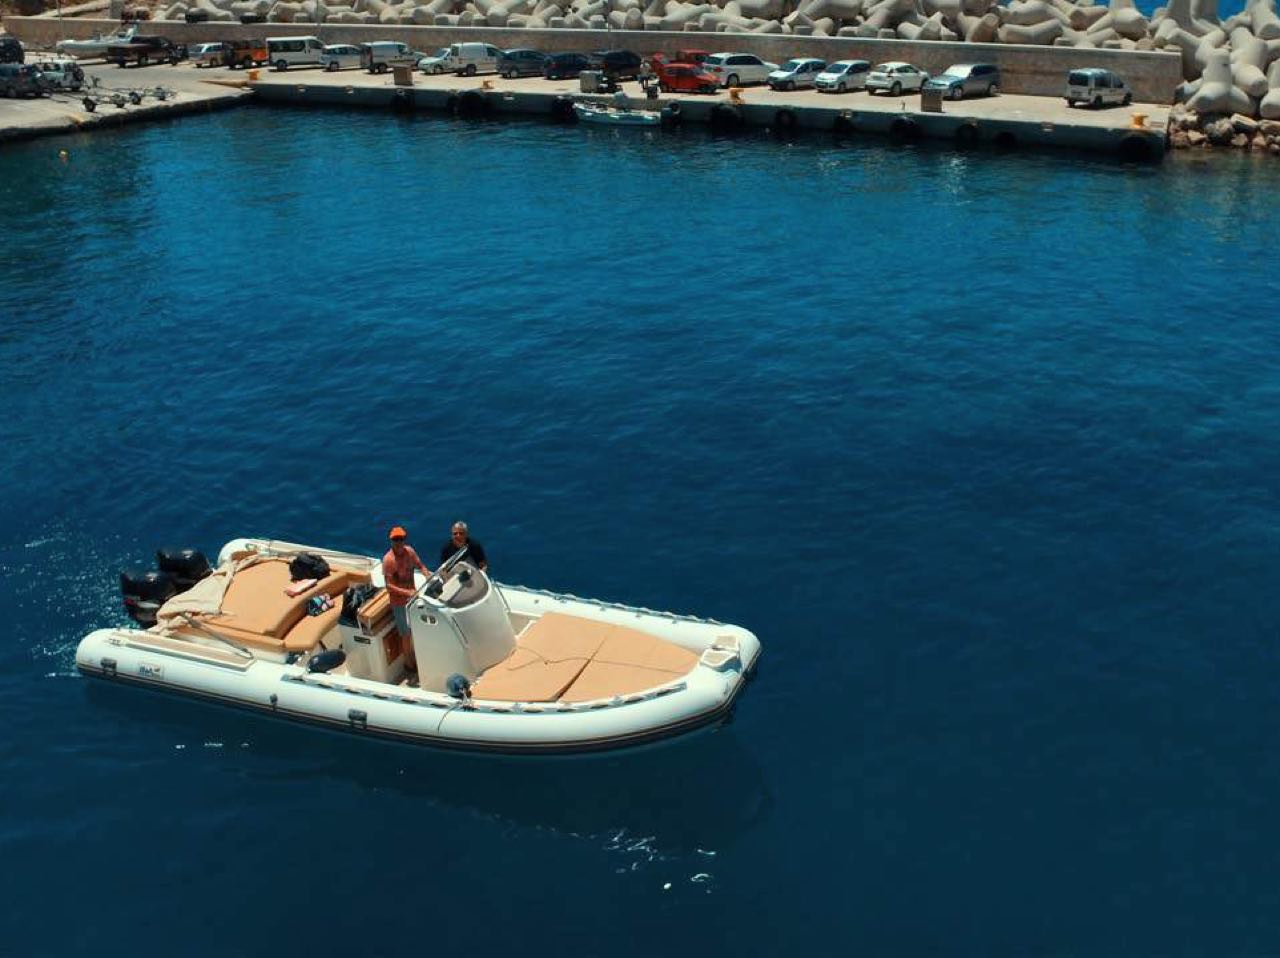 Rent A Boat In South Chania - Crete, rent boat sfakia port village, rent boat licence chania crete, rent a boat loutro village, rent a boat agia roumeli, renta a boat marmara beach, rent a boat in Crete